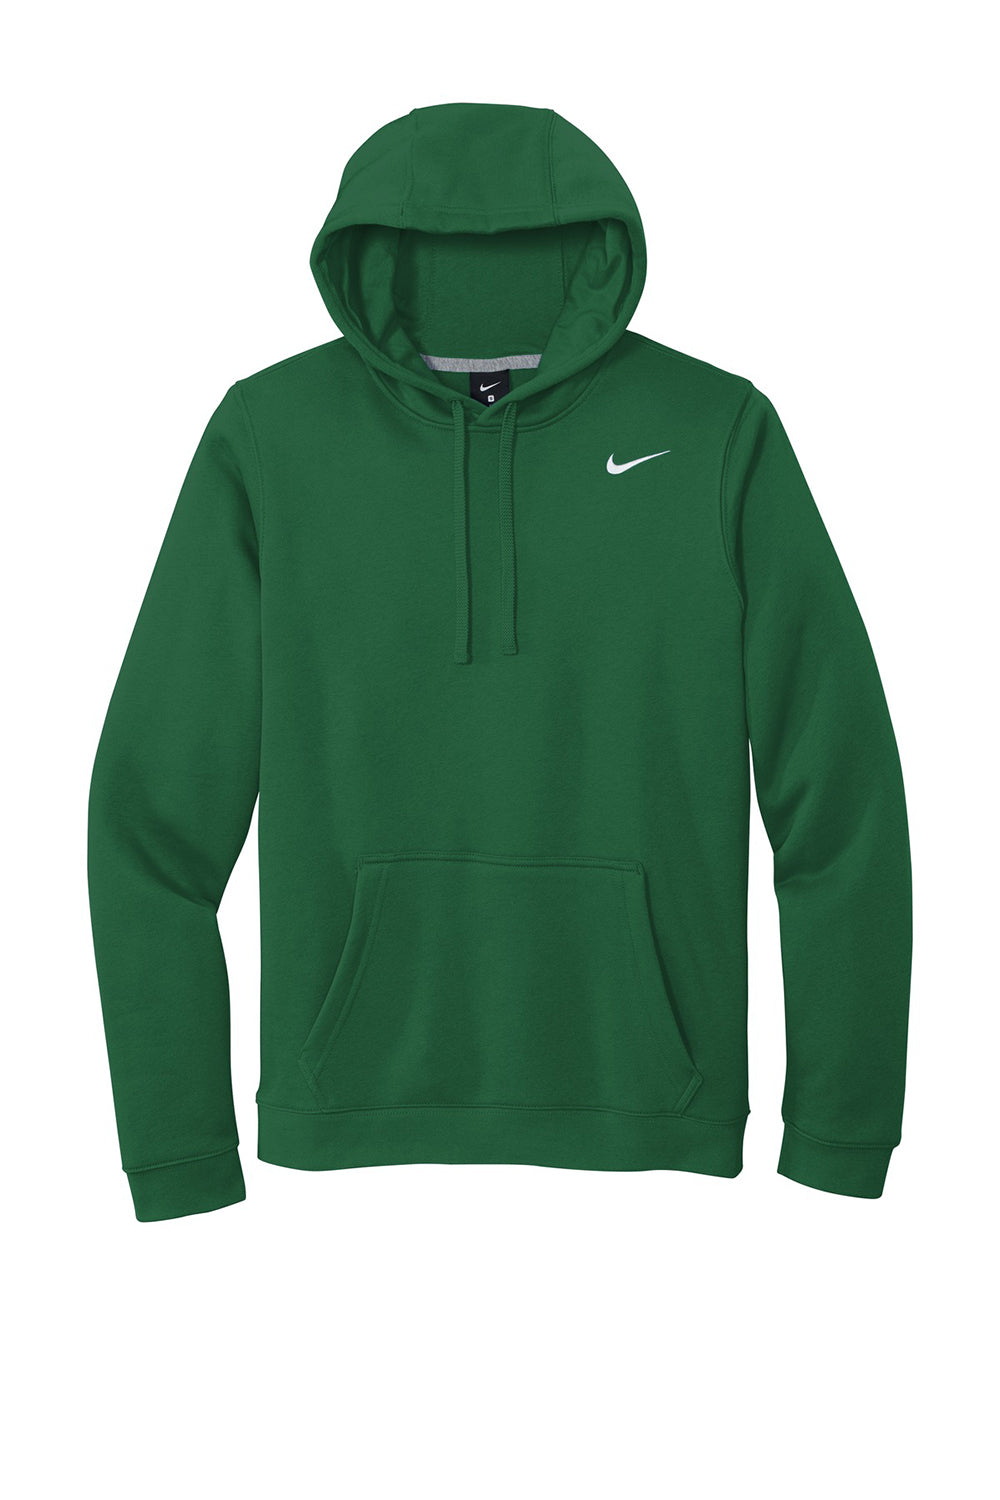 Nike CJ1611 Mens Club Fleece Hooded Sweatshirt Hoodie Dark Green Flat Front